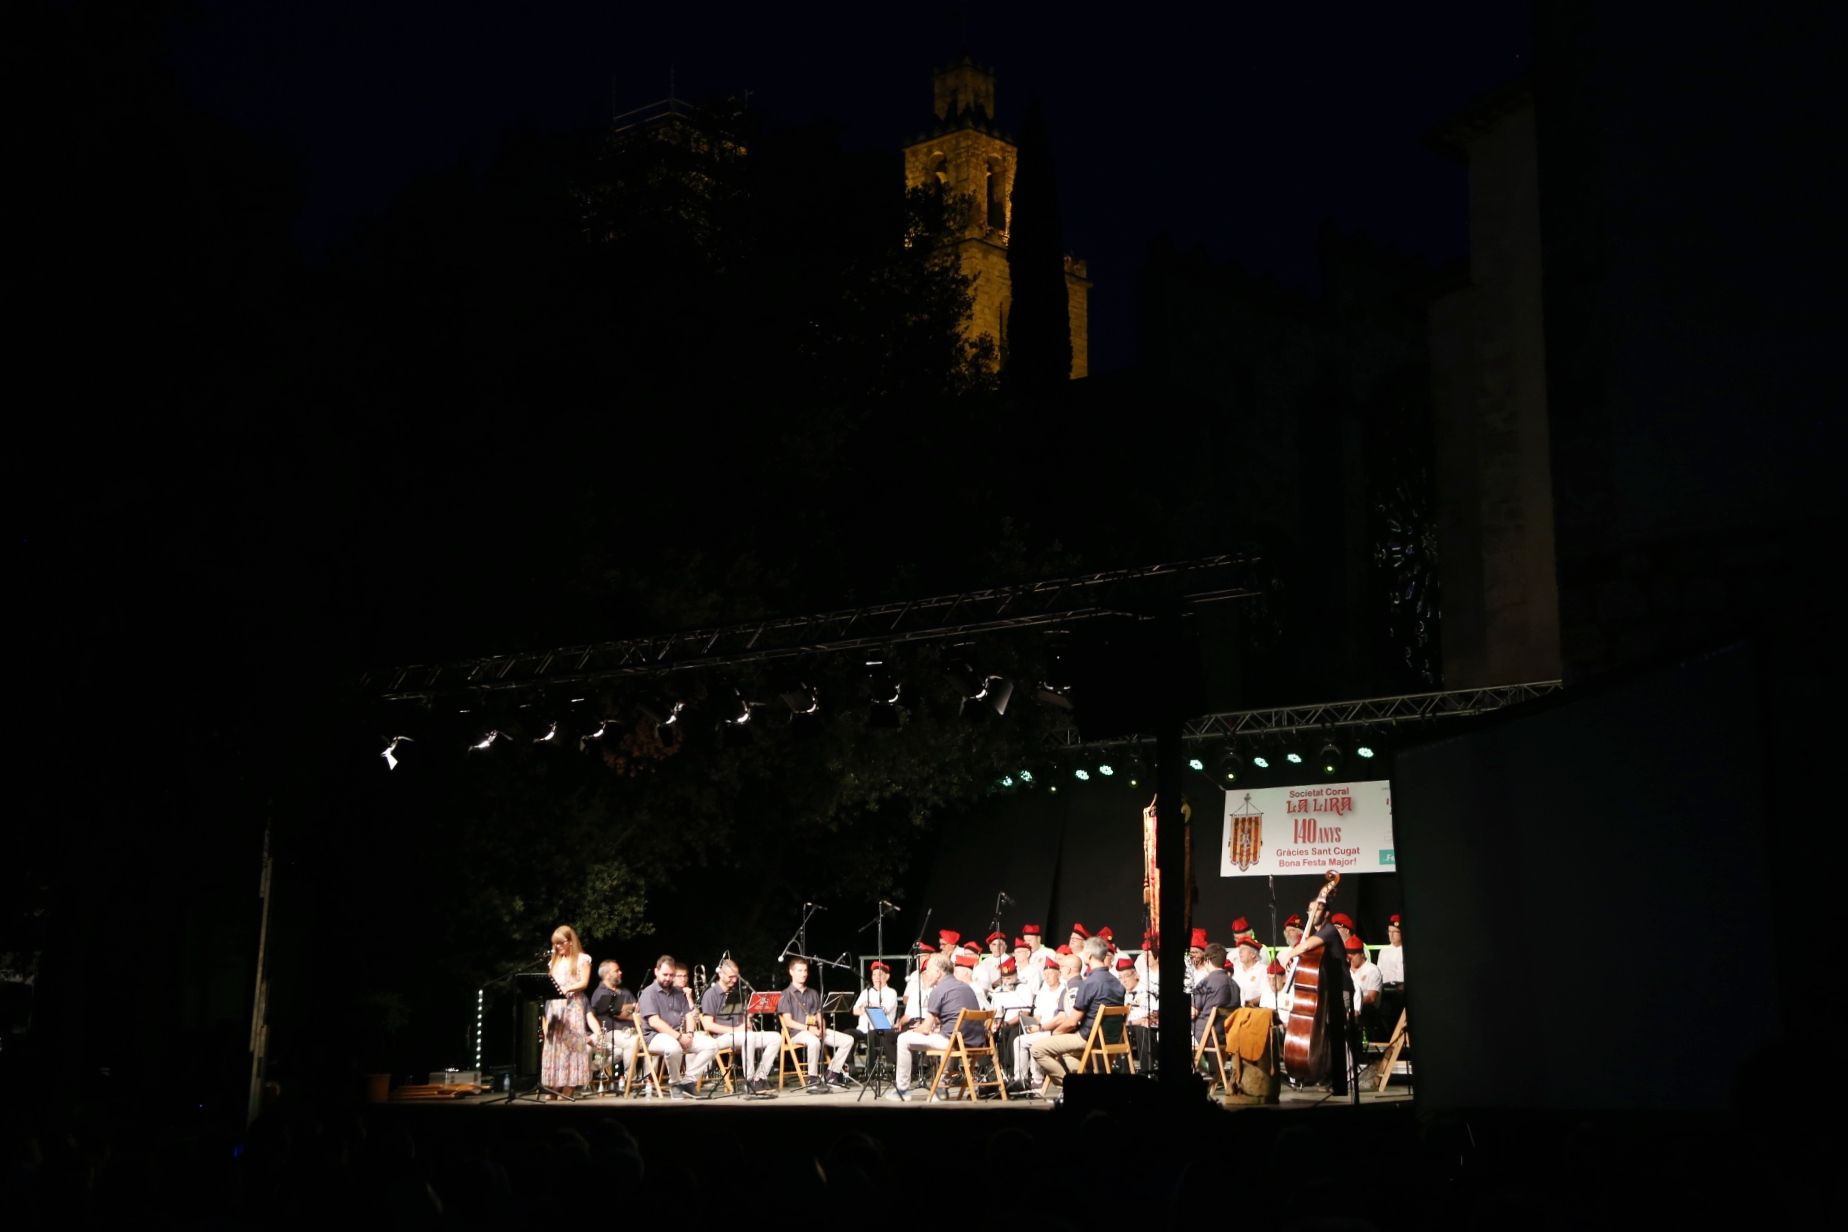 Concert de Festa Major a càrrec de la Societat Coral La Lira i la Cobla Sant Jordi. FOTO: Anna Bassa